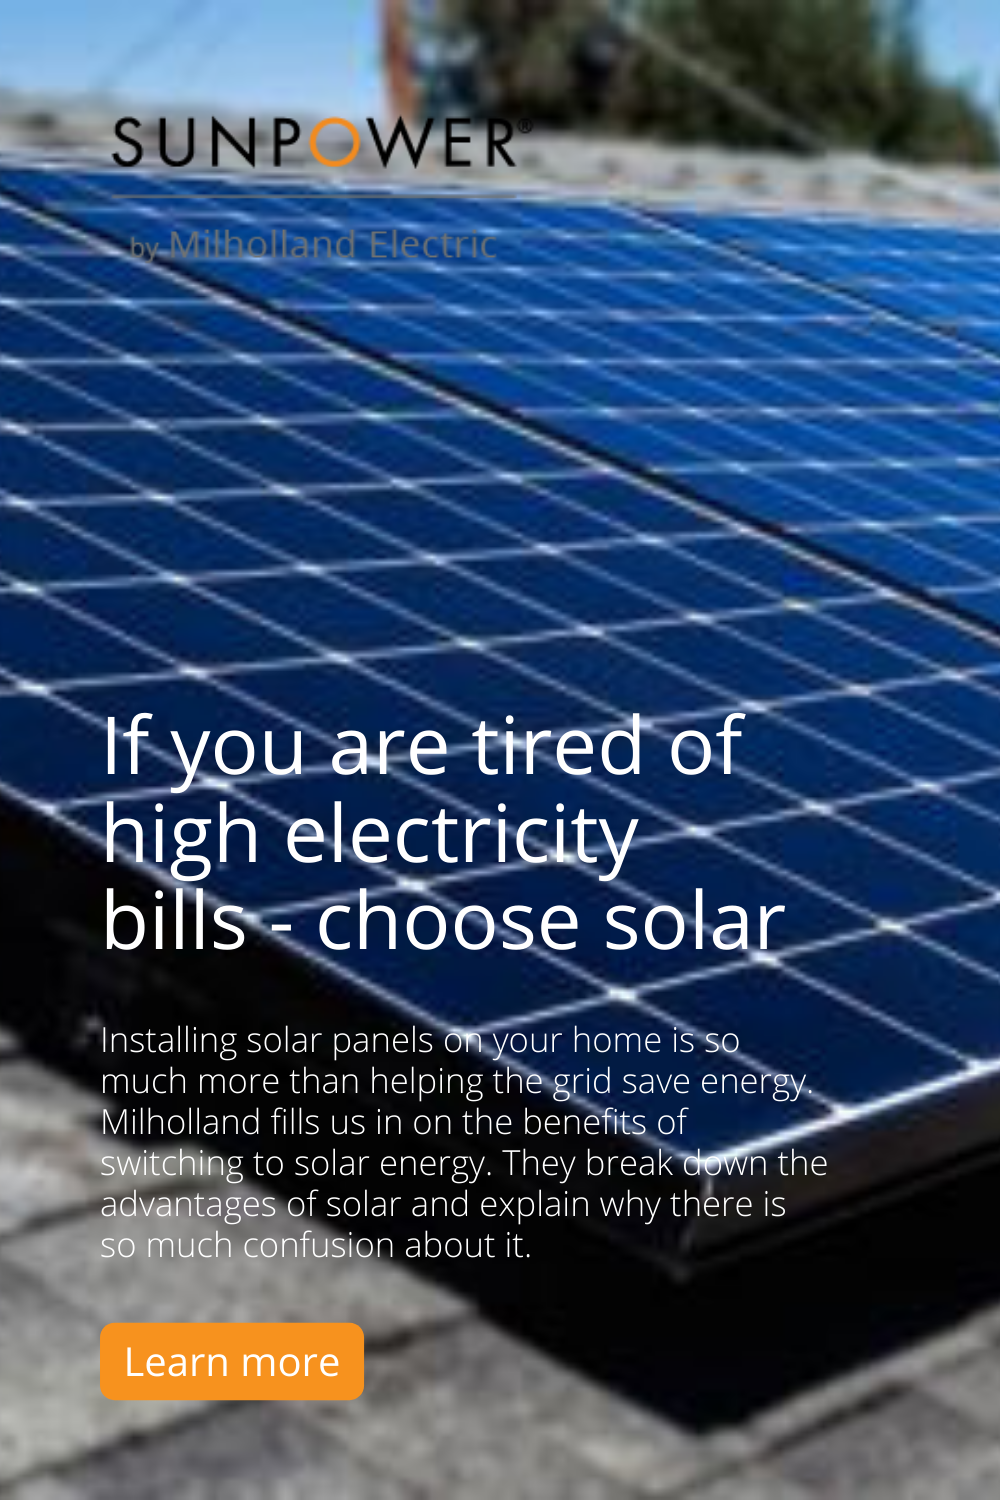 How Do Solar Panels Reduce Energy Bills